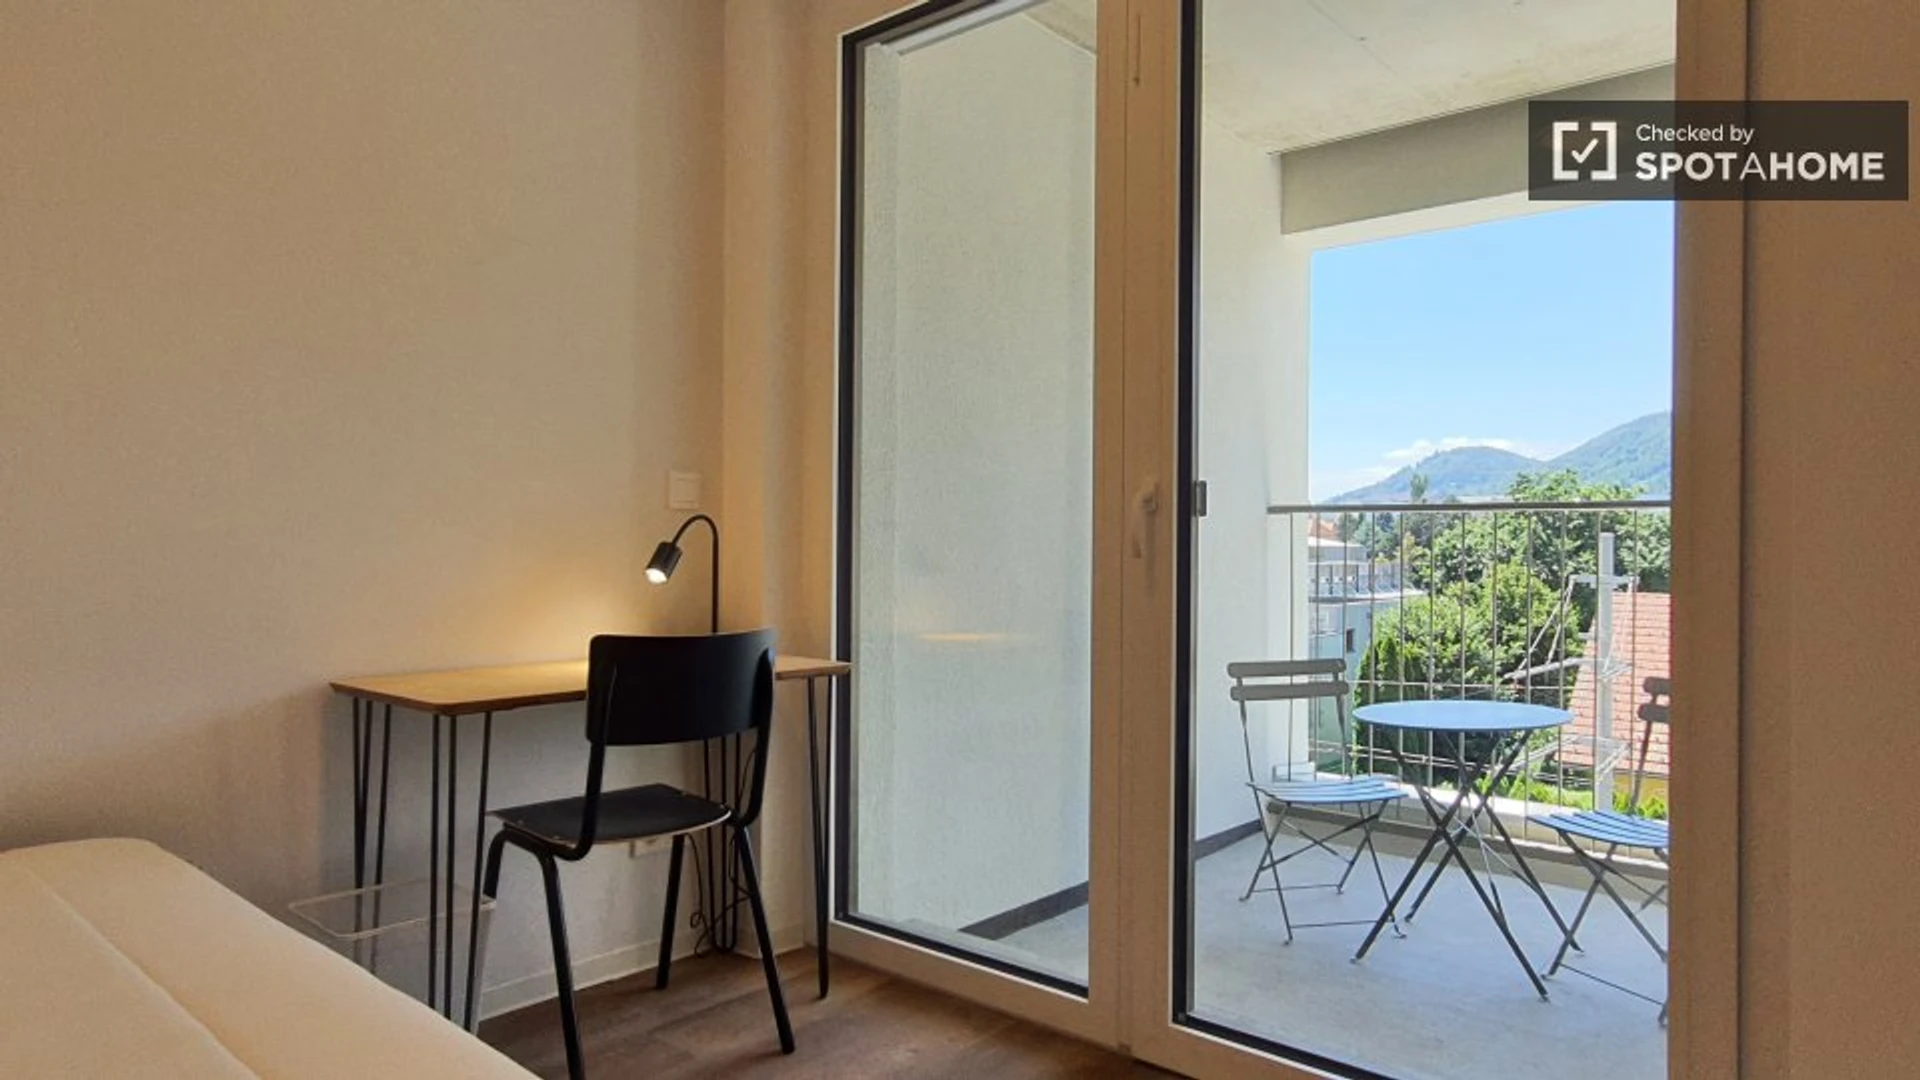 Cheap private room in Graz